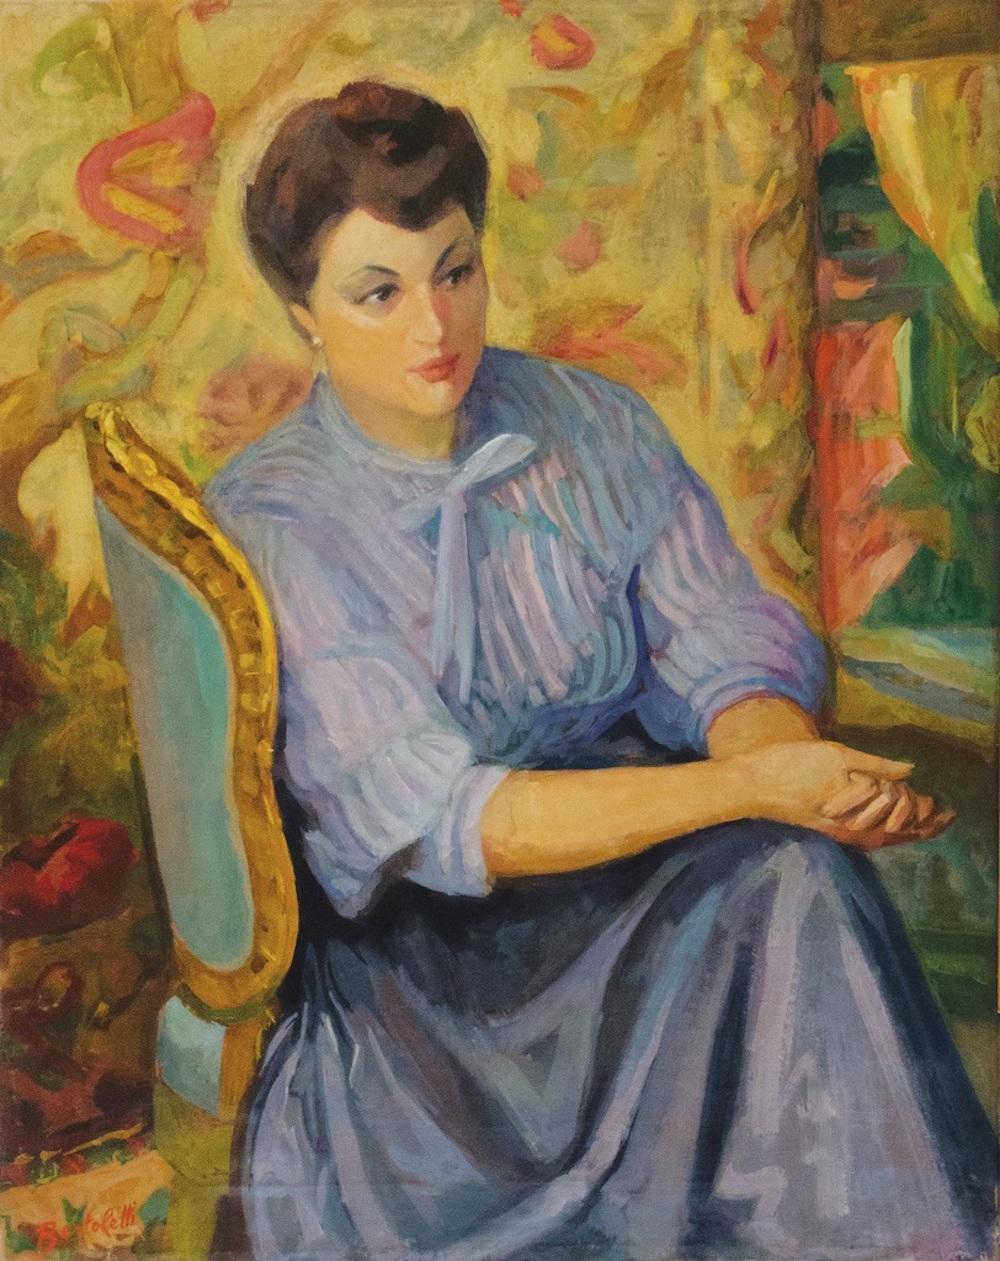 Woman - Original Oil in Canvas by Nino Bertoletti - 1950s